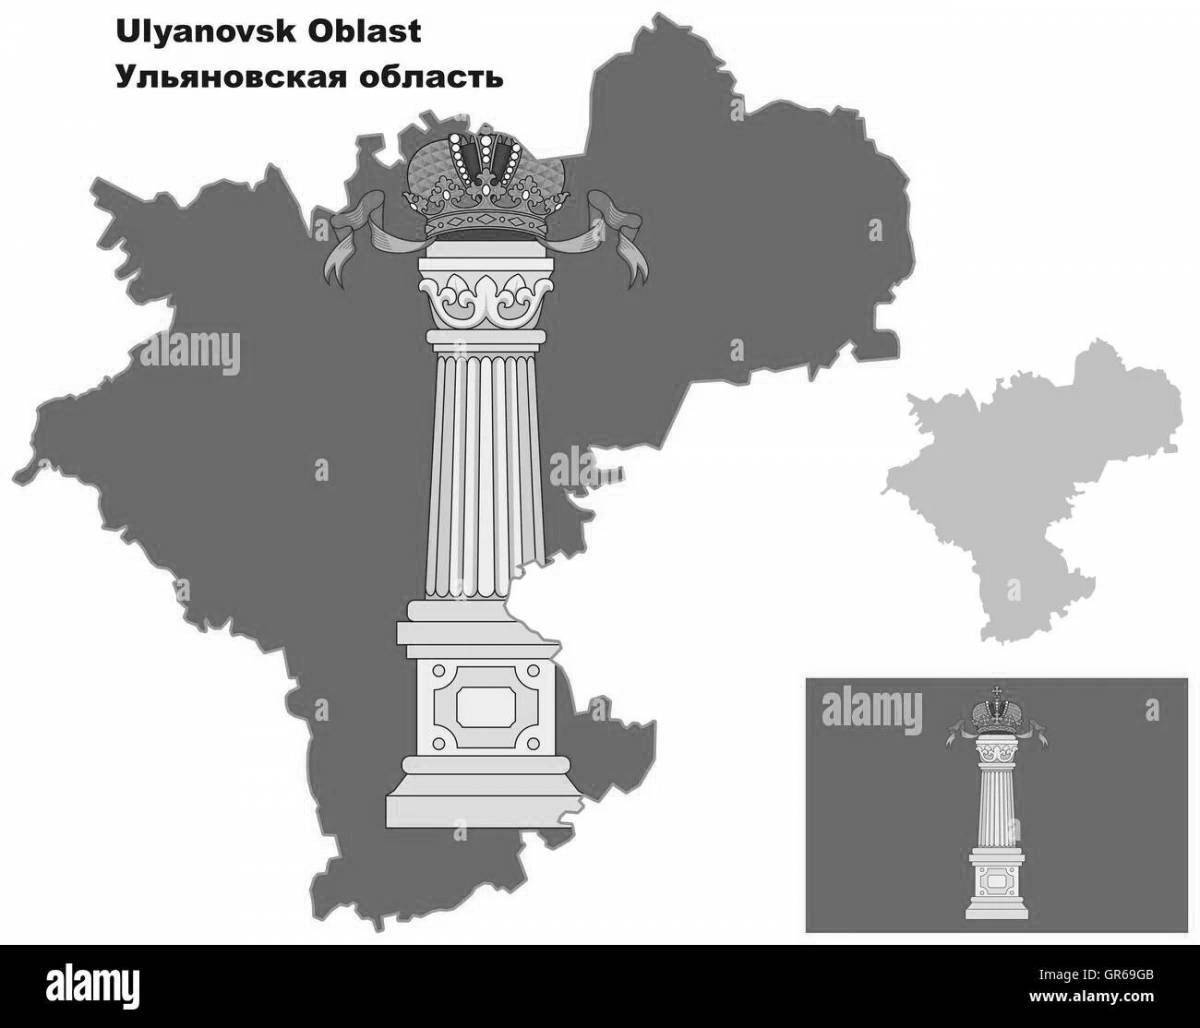 Прекрасная карта ульяновской области